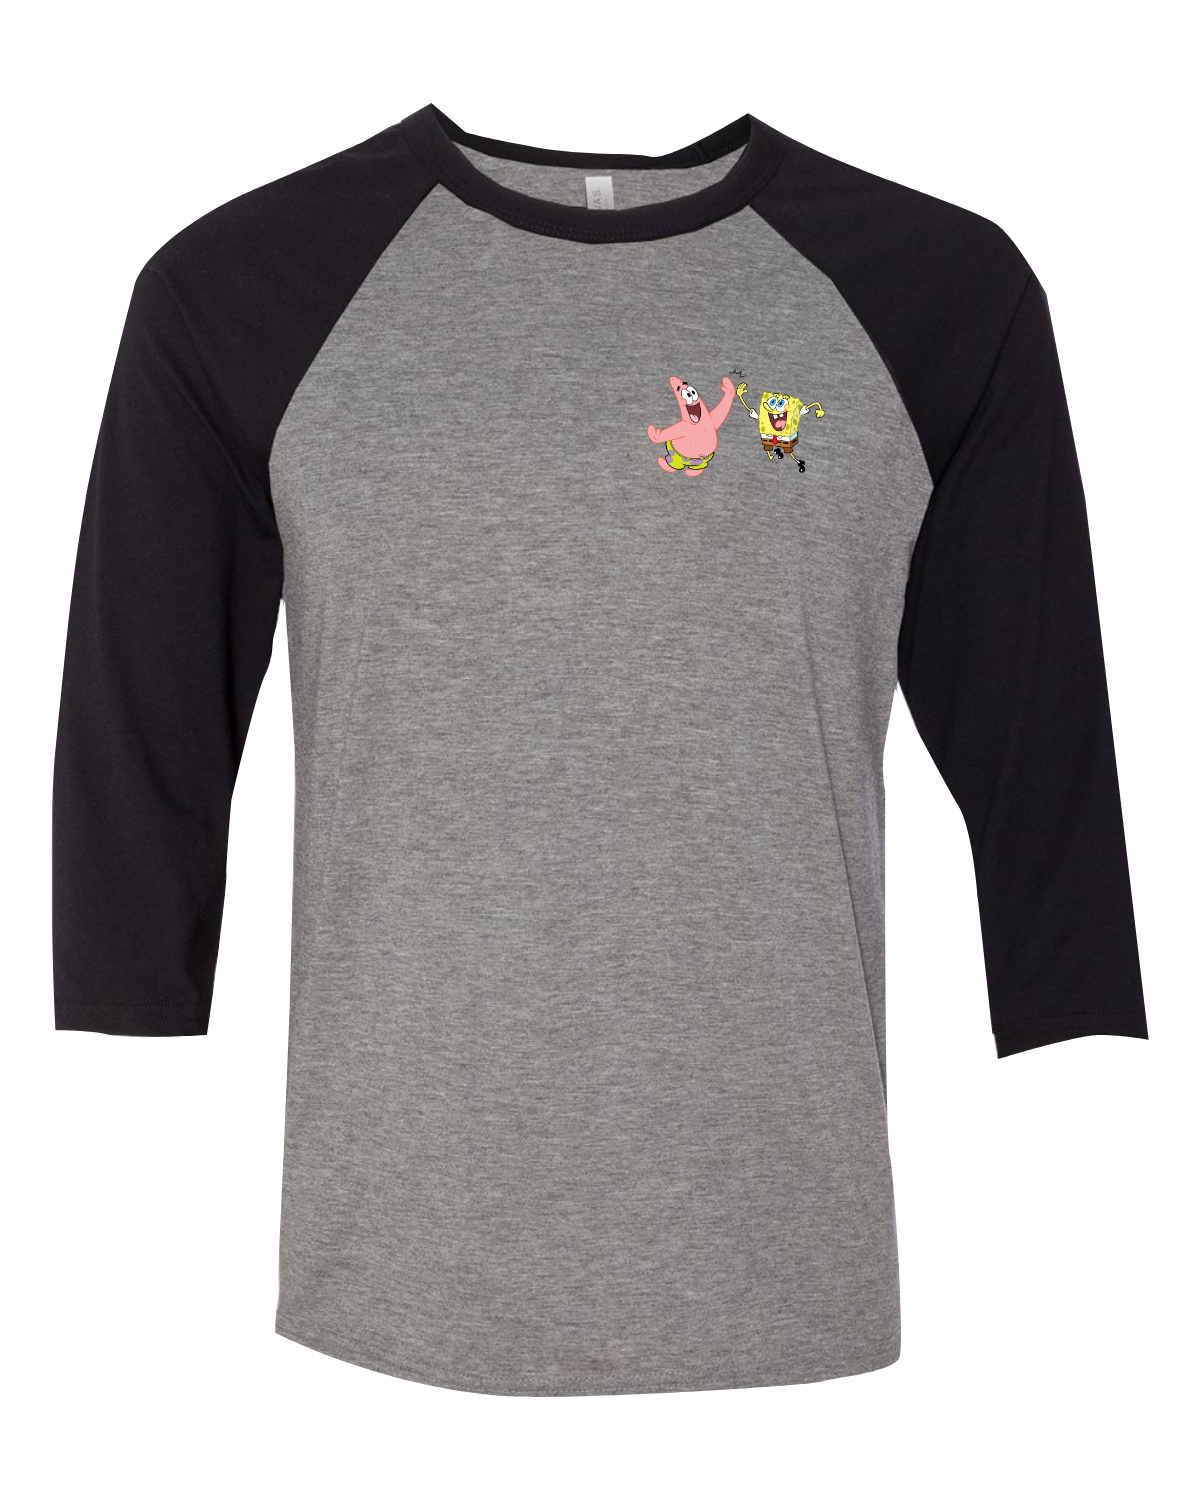 Spongebob Schwammkopf tun Sachen zusammen Raglan-Ärmel Baseball T-Shirt